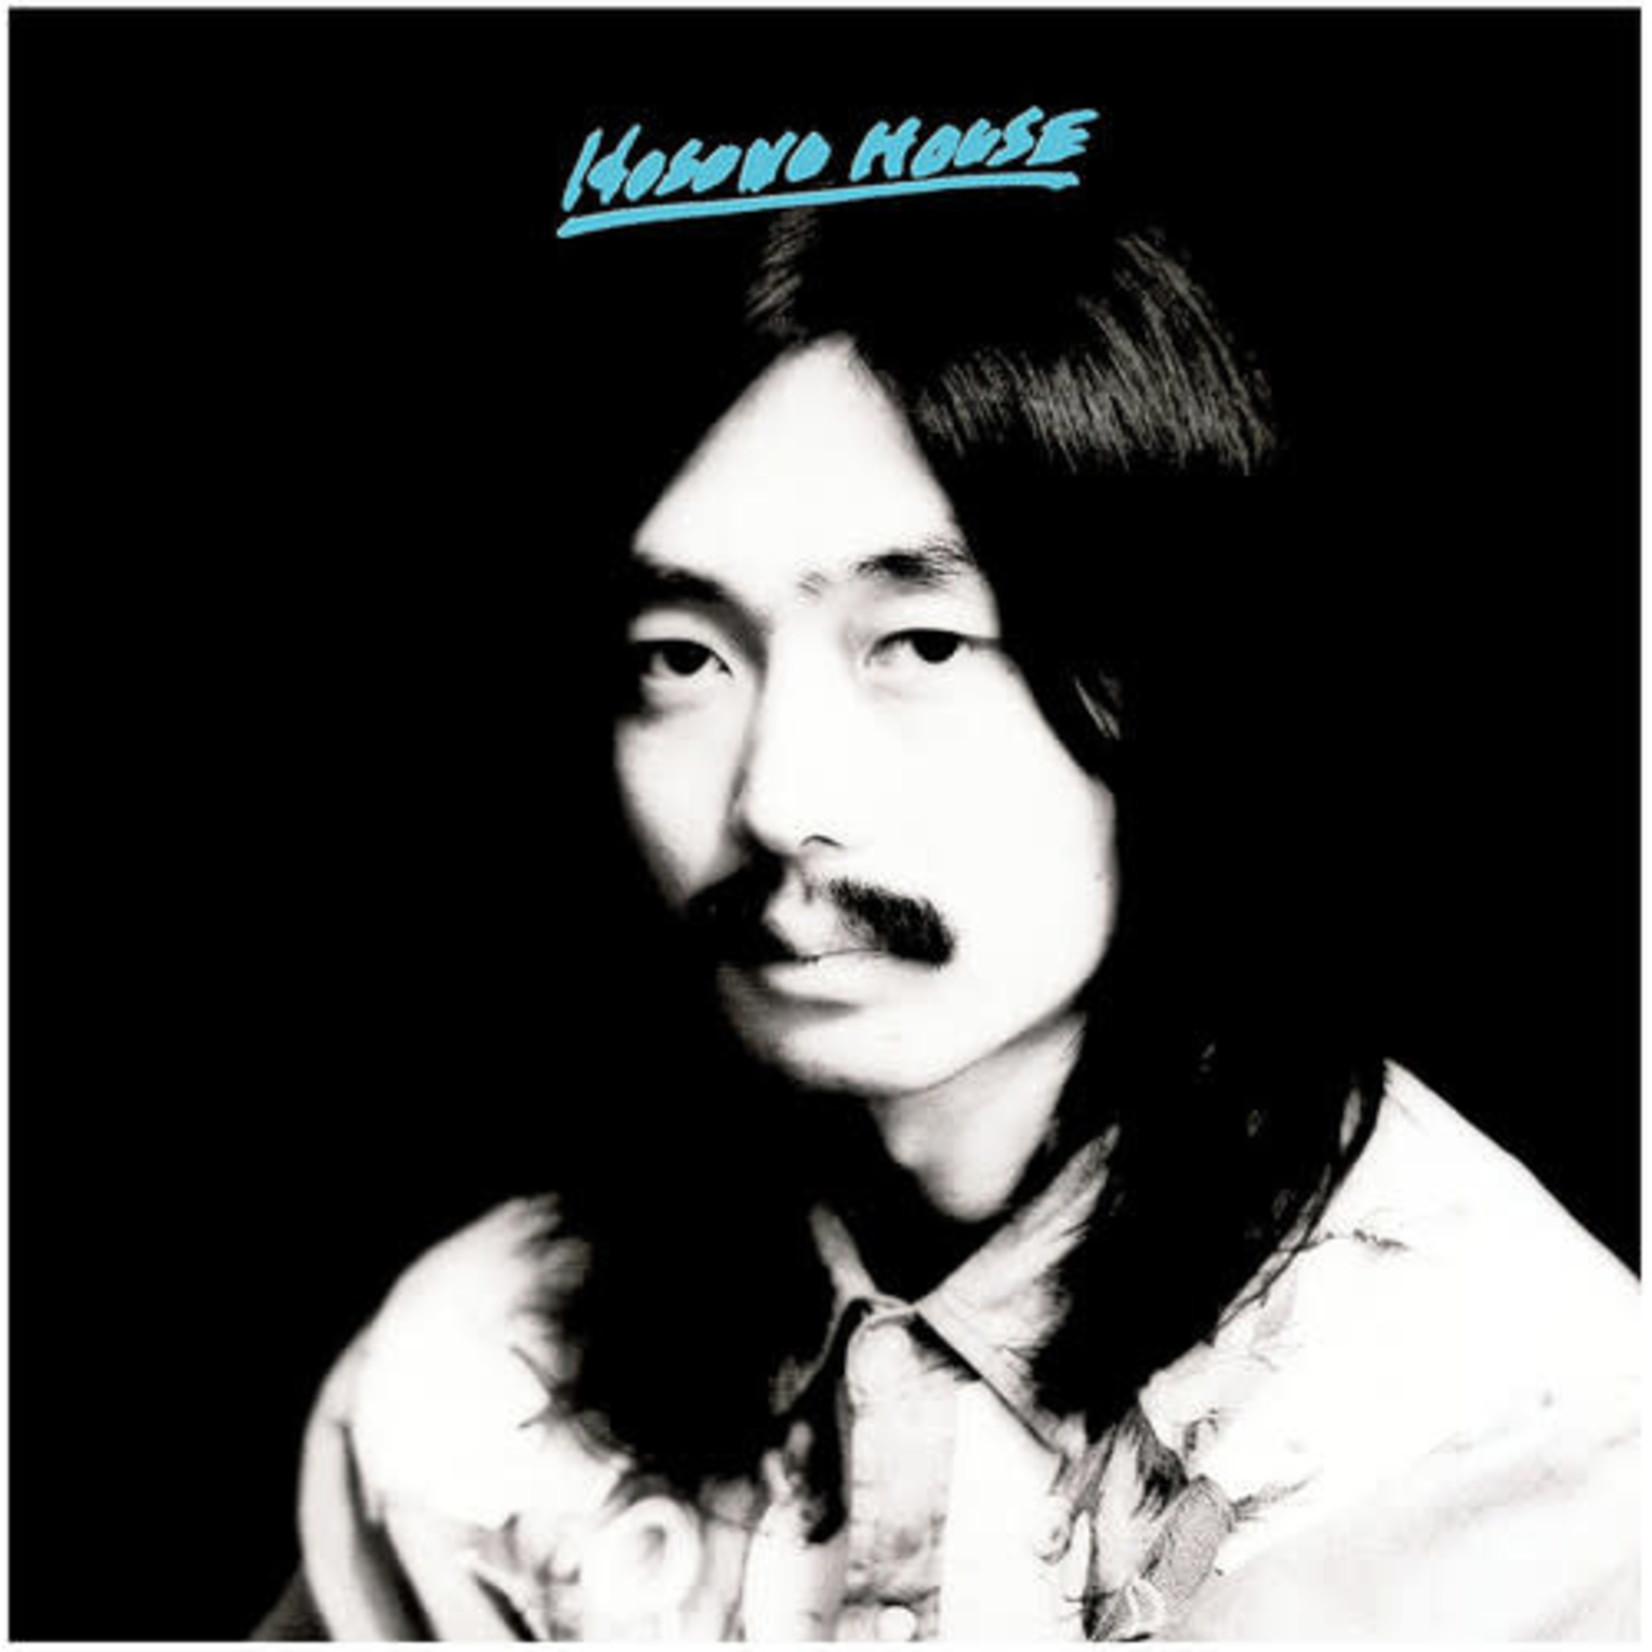 Light In The Attic Haruomi Hosono - Hosono House (LP) [Blue]